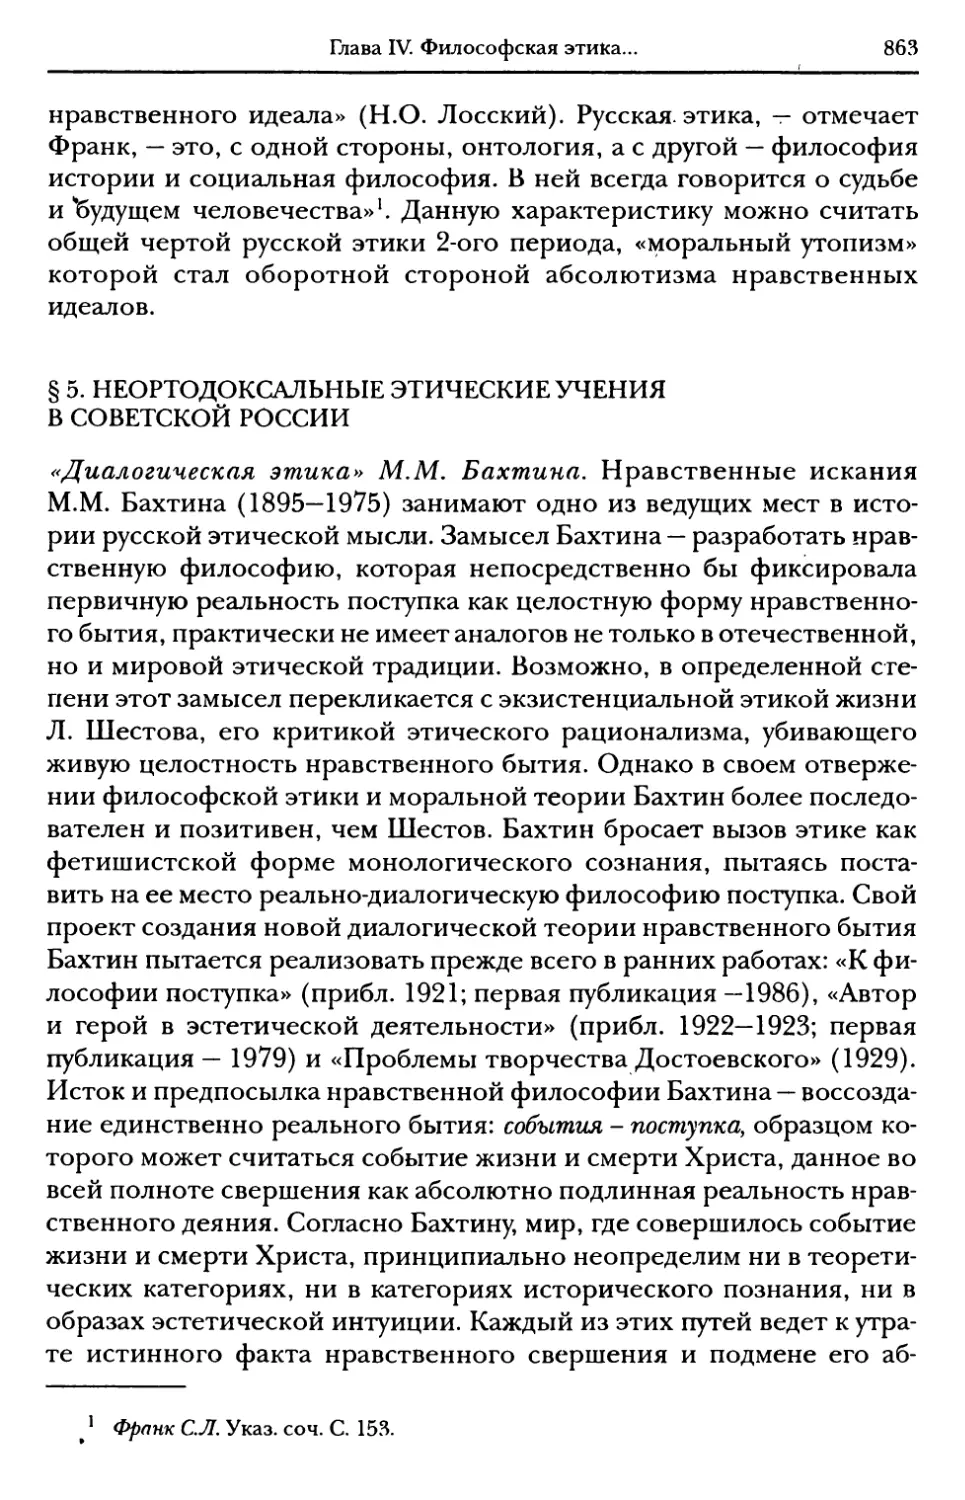 § 5. Неортодоксальные этические учения в Советской России